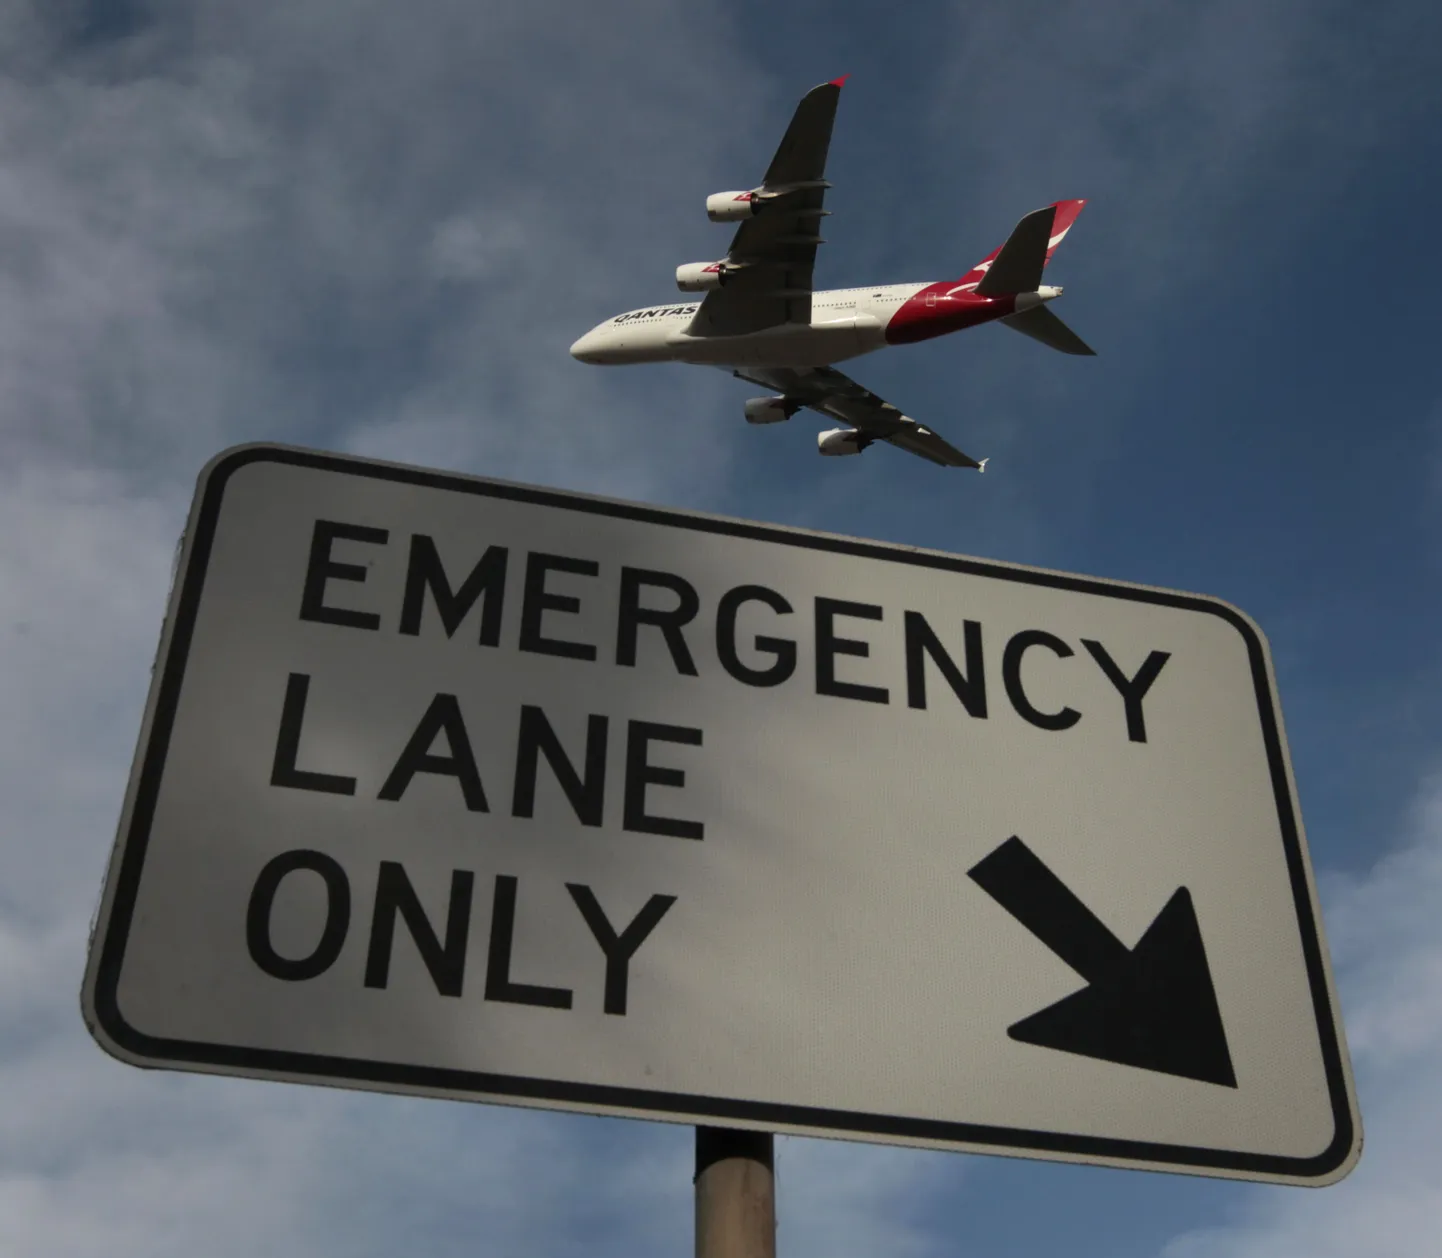 Näide nii-nimetatud "sümbolpildist", kus Reutersi fotograaf on pildistnud mainekriisi ajal maanduvat Qantase lennukit sildi "hädamaandumisrada" taustal.